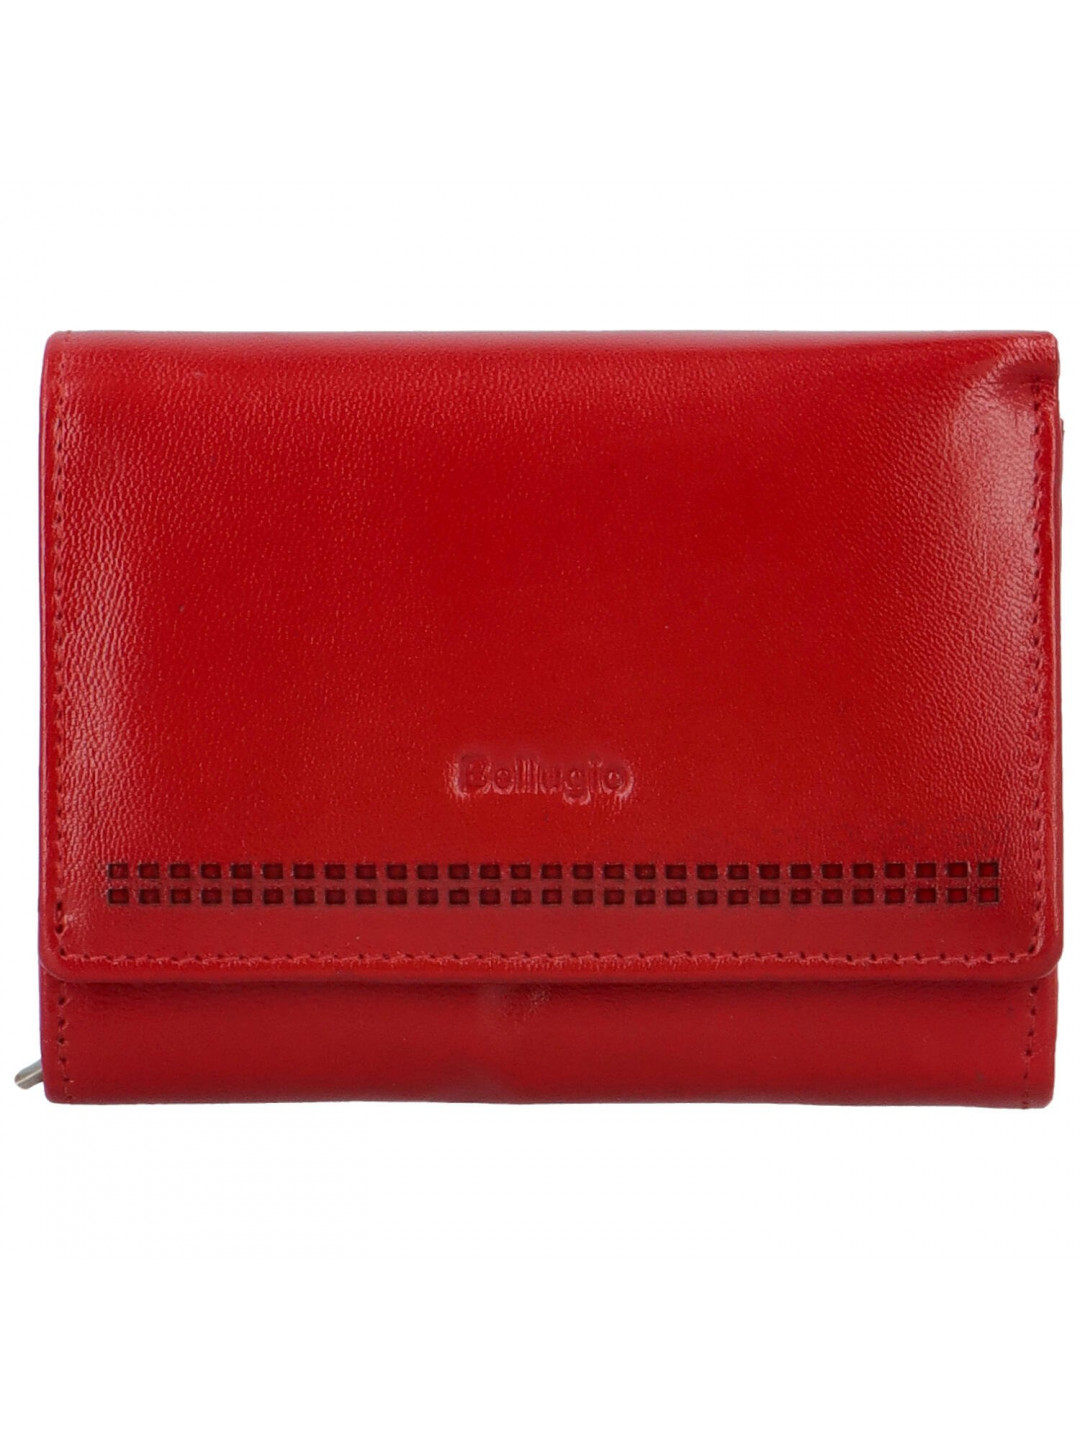 Dámská kožená malá peněženka Bellugio Aijva červená